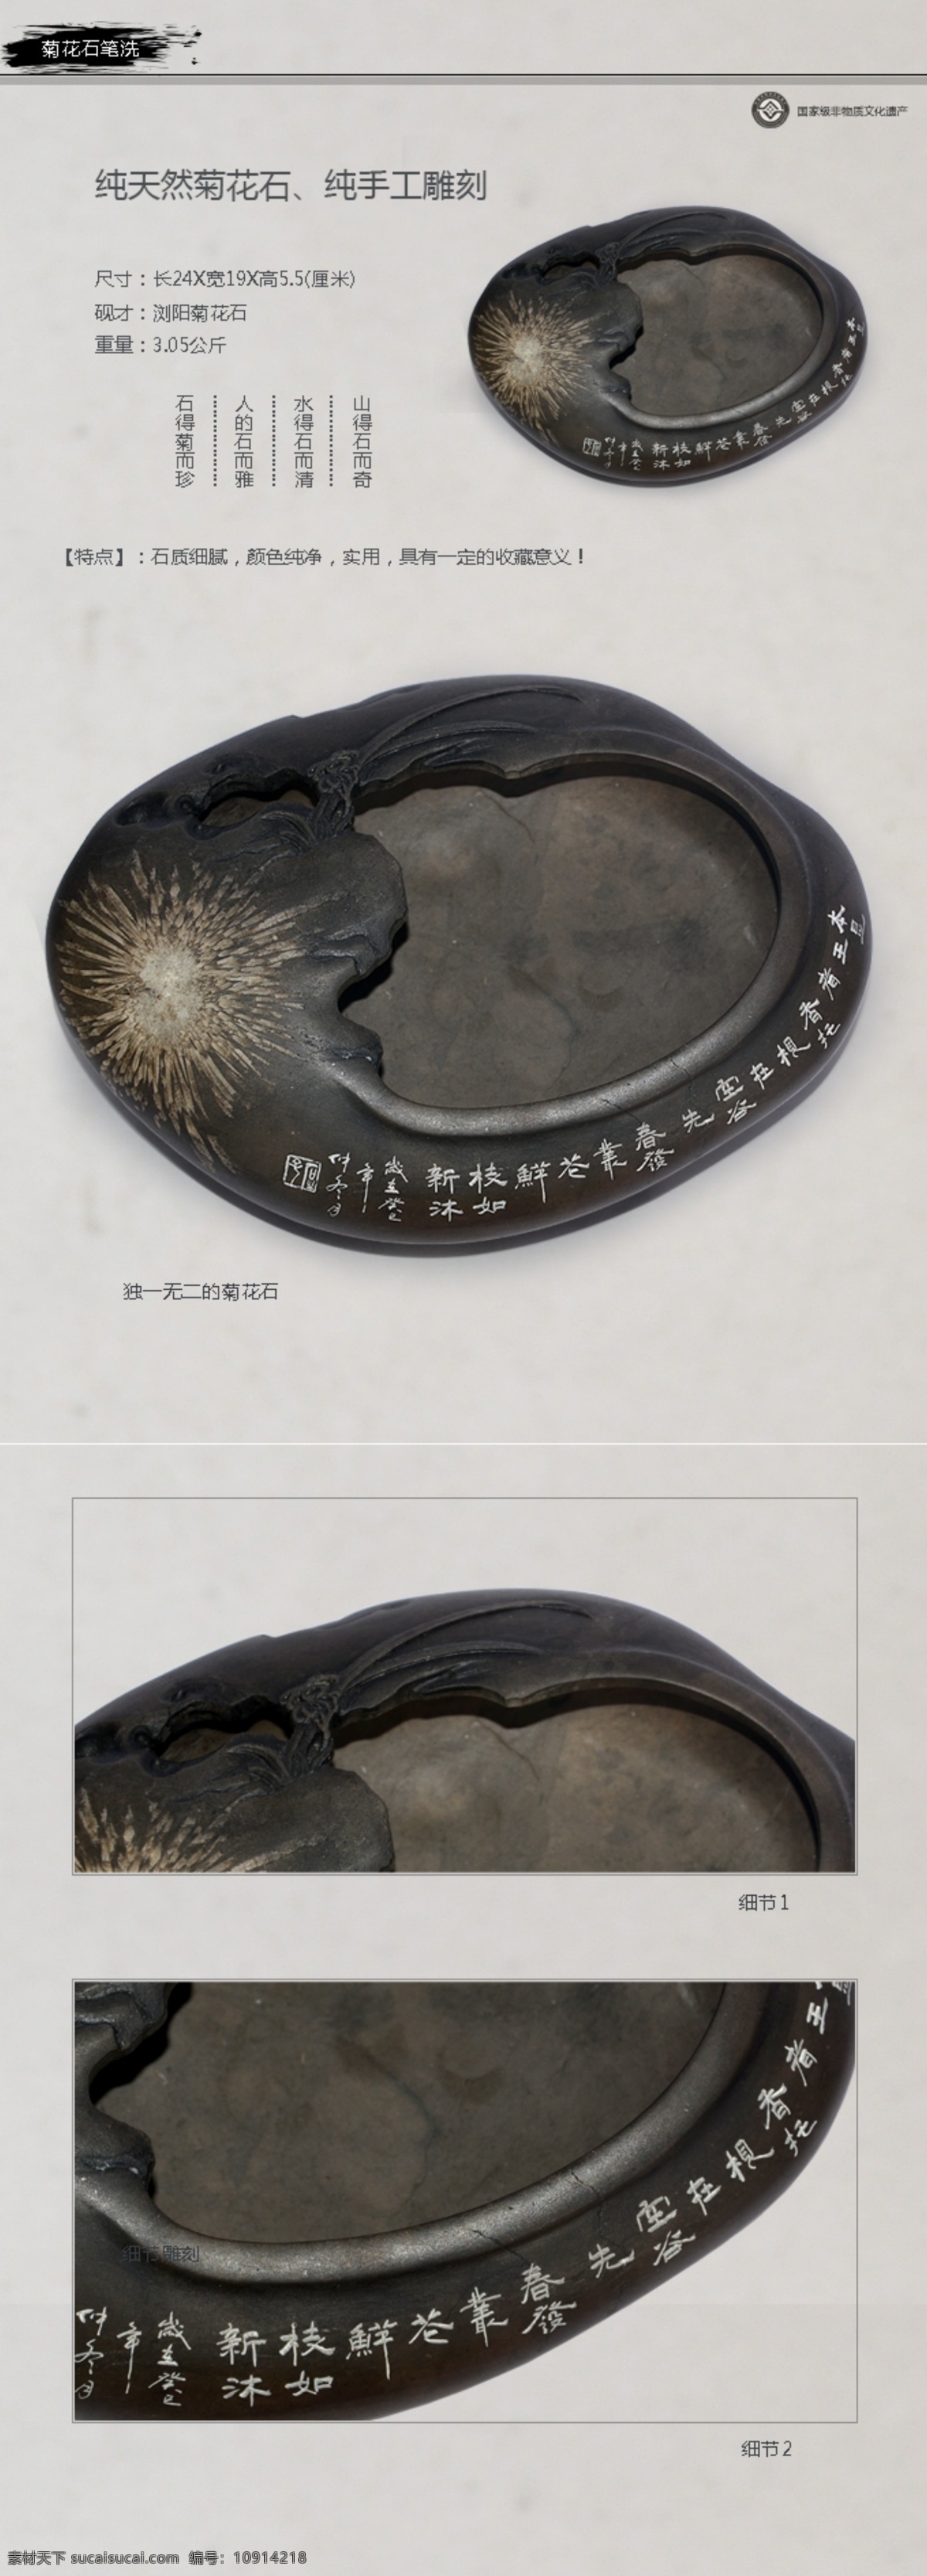 菊花石 笔洗 烟灰缸 雕刻 砚台 产品描述 灰色